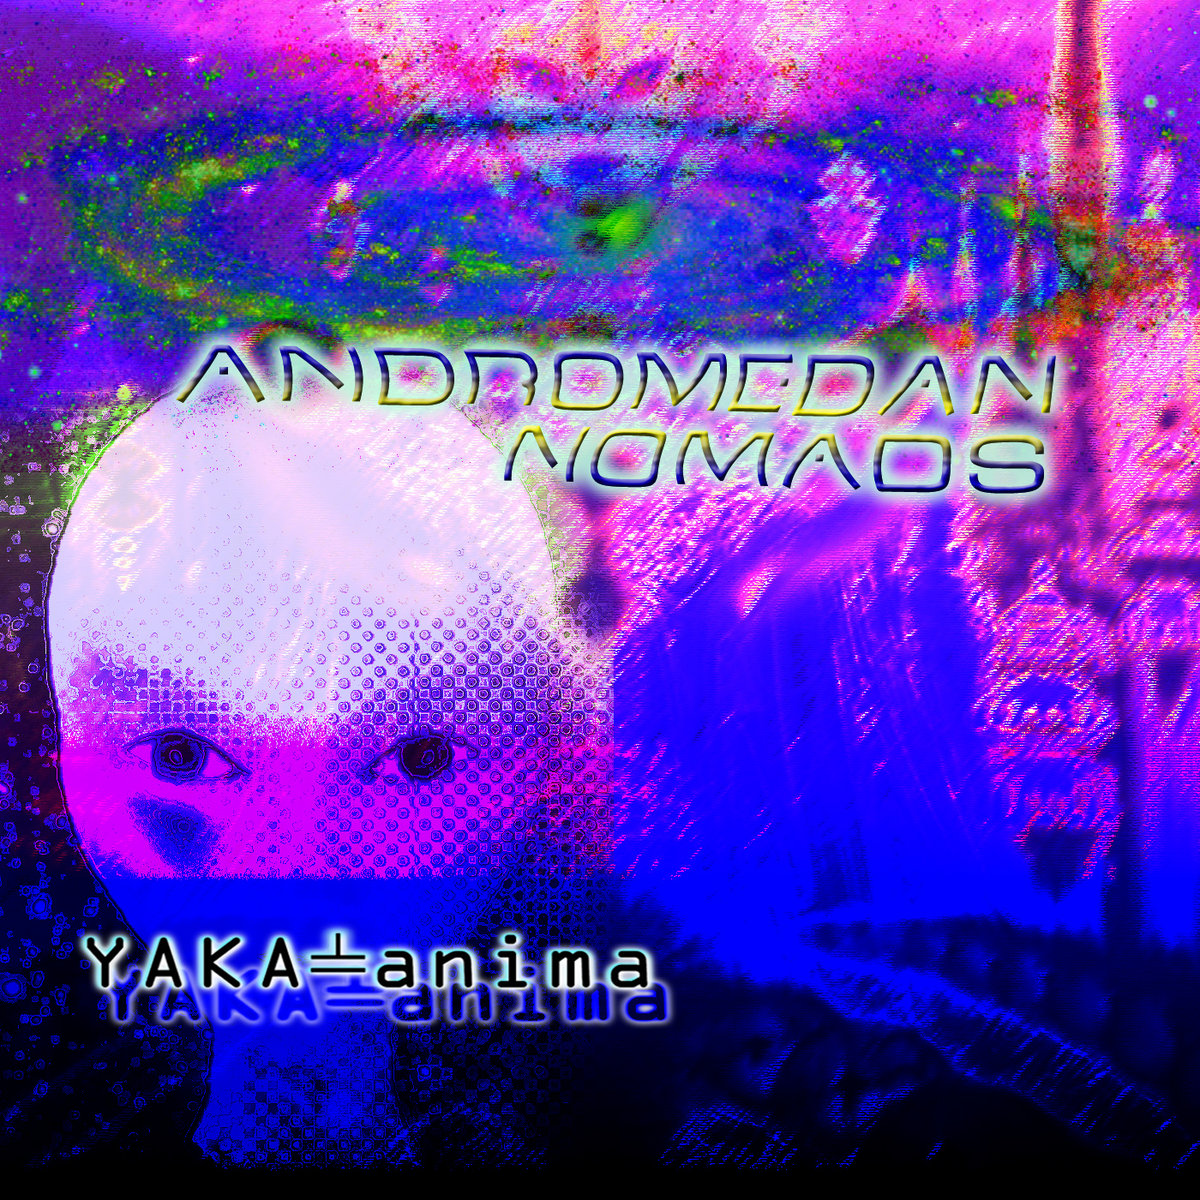 Yaka-anima – Andromedan Nomads